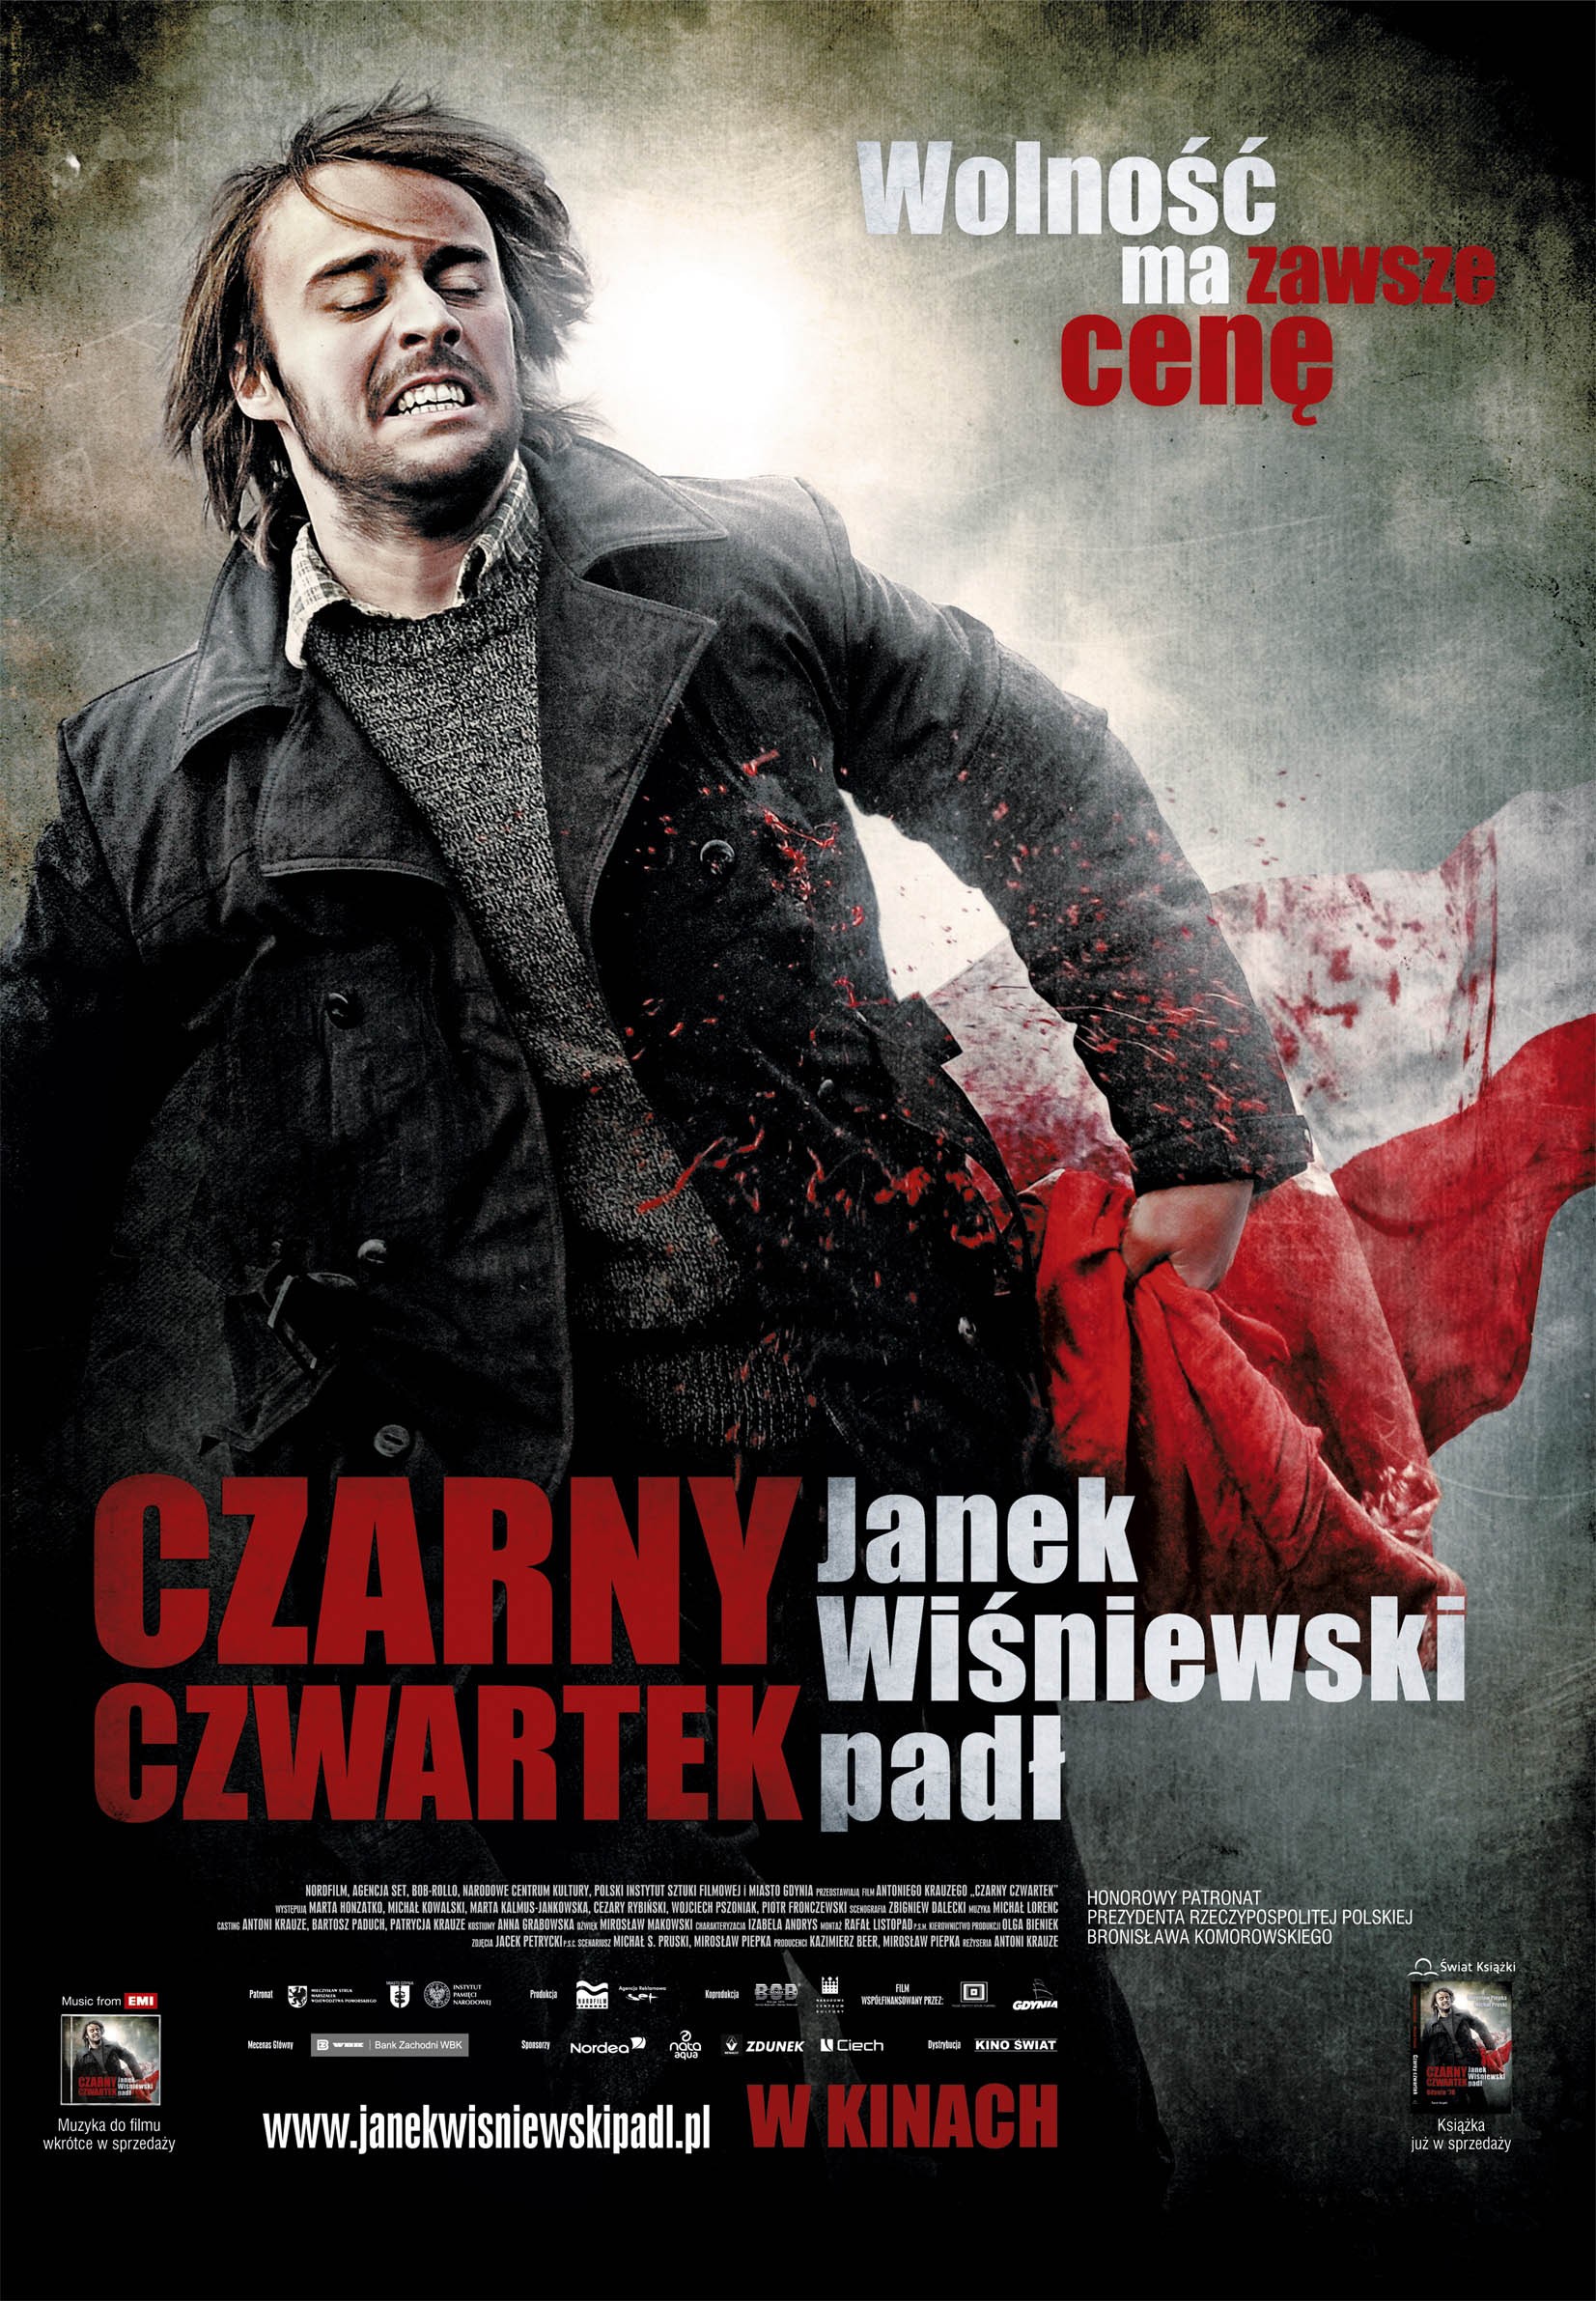 Mega Sized Movie Poster Image for Czarny czwartek 